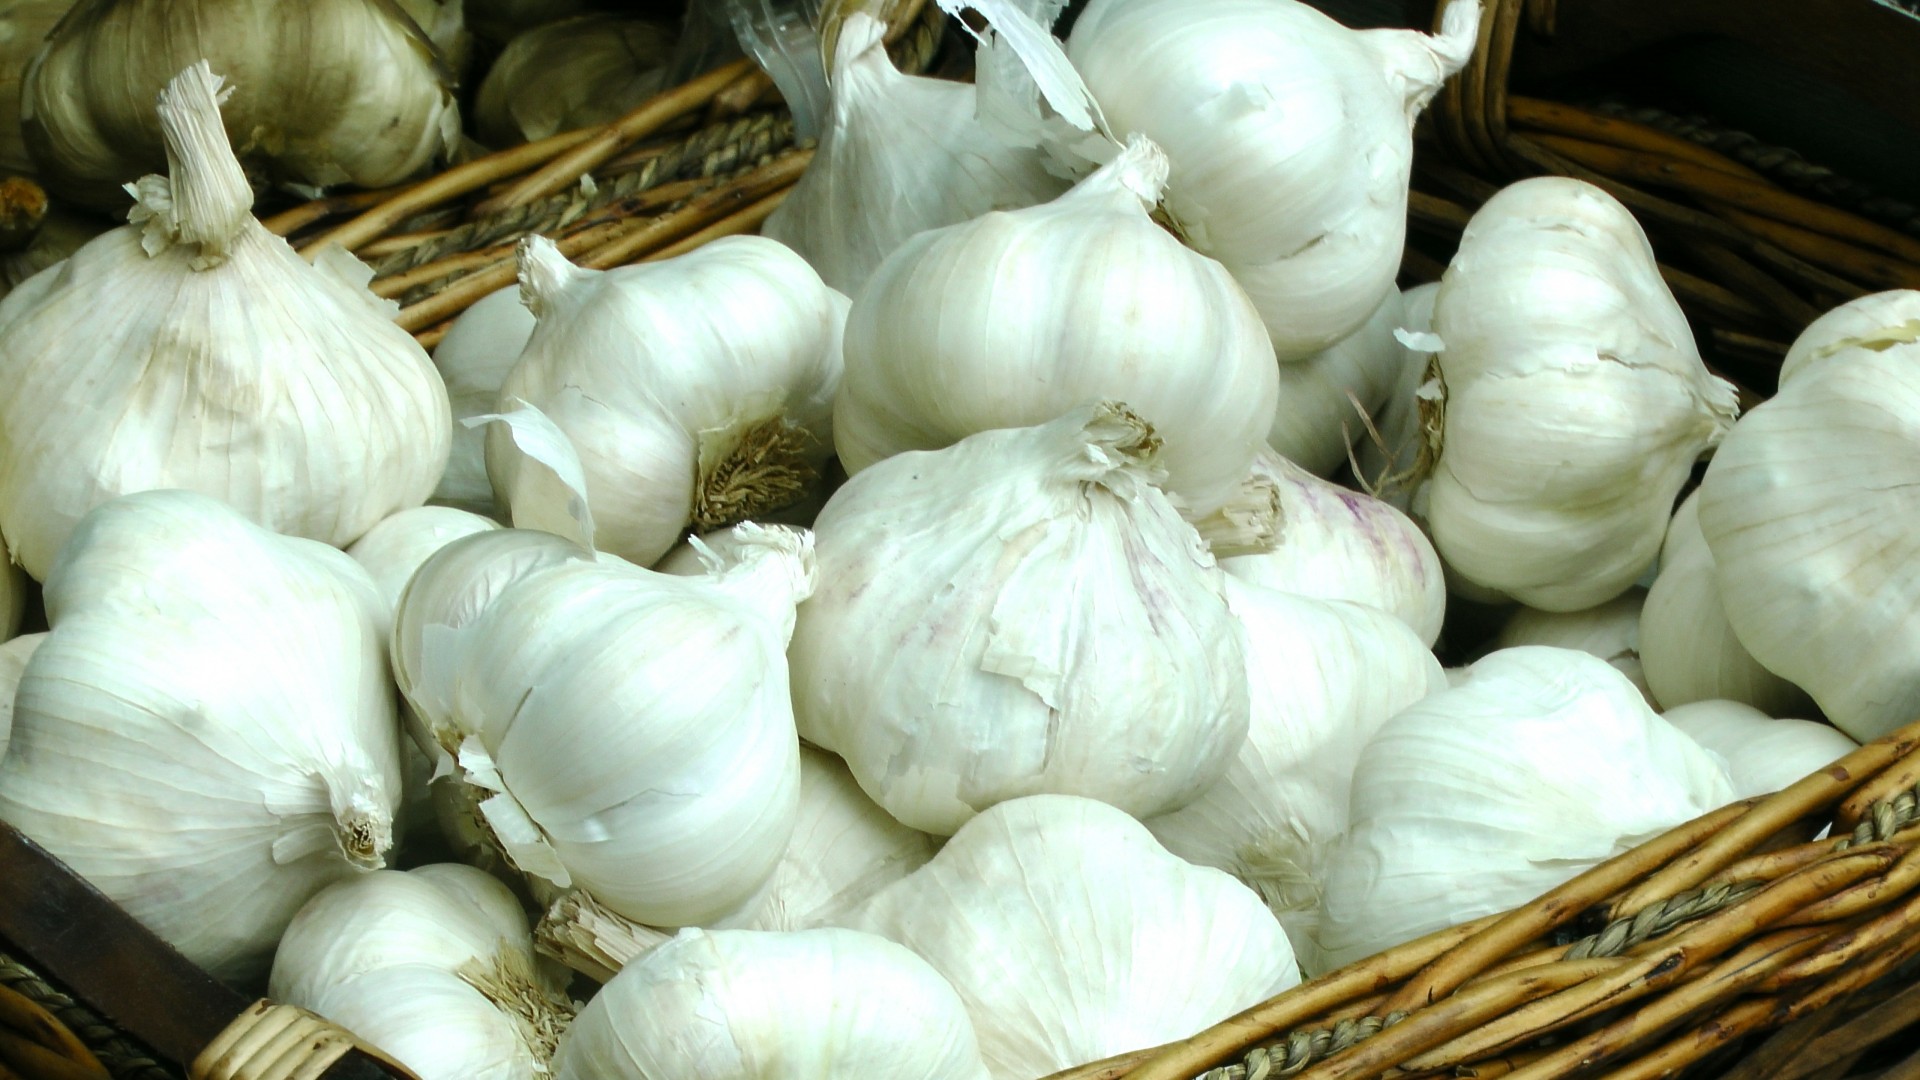 Cloves Of Garlic In A Basket